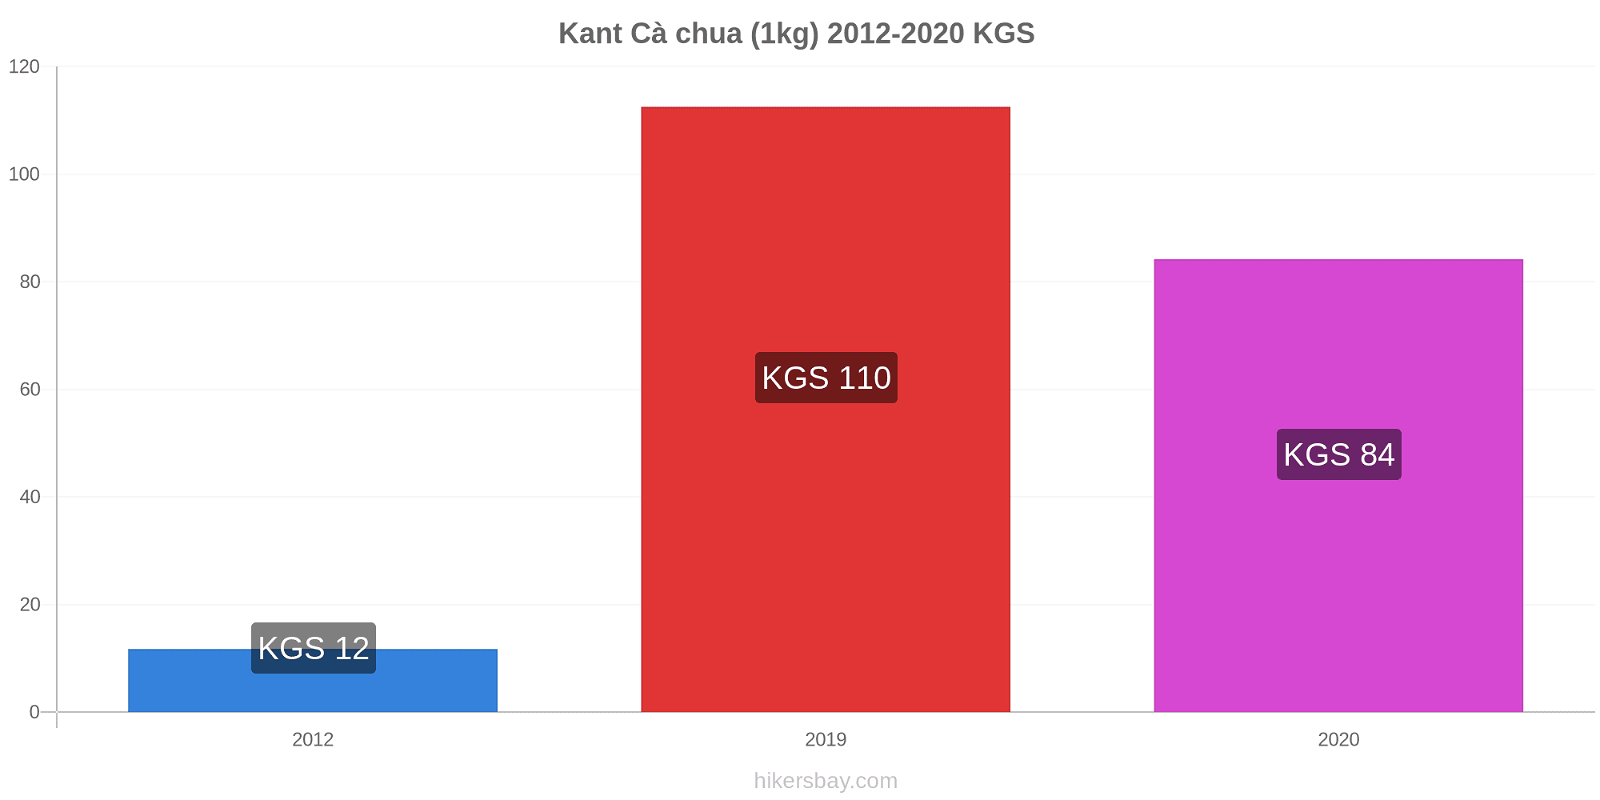 Kant thay đổi giá Cà chua (1kg) hikersbay.com